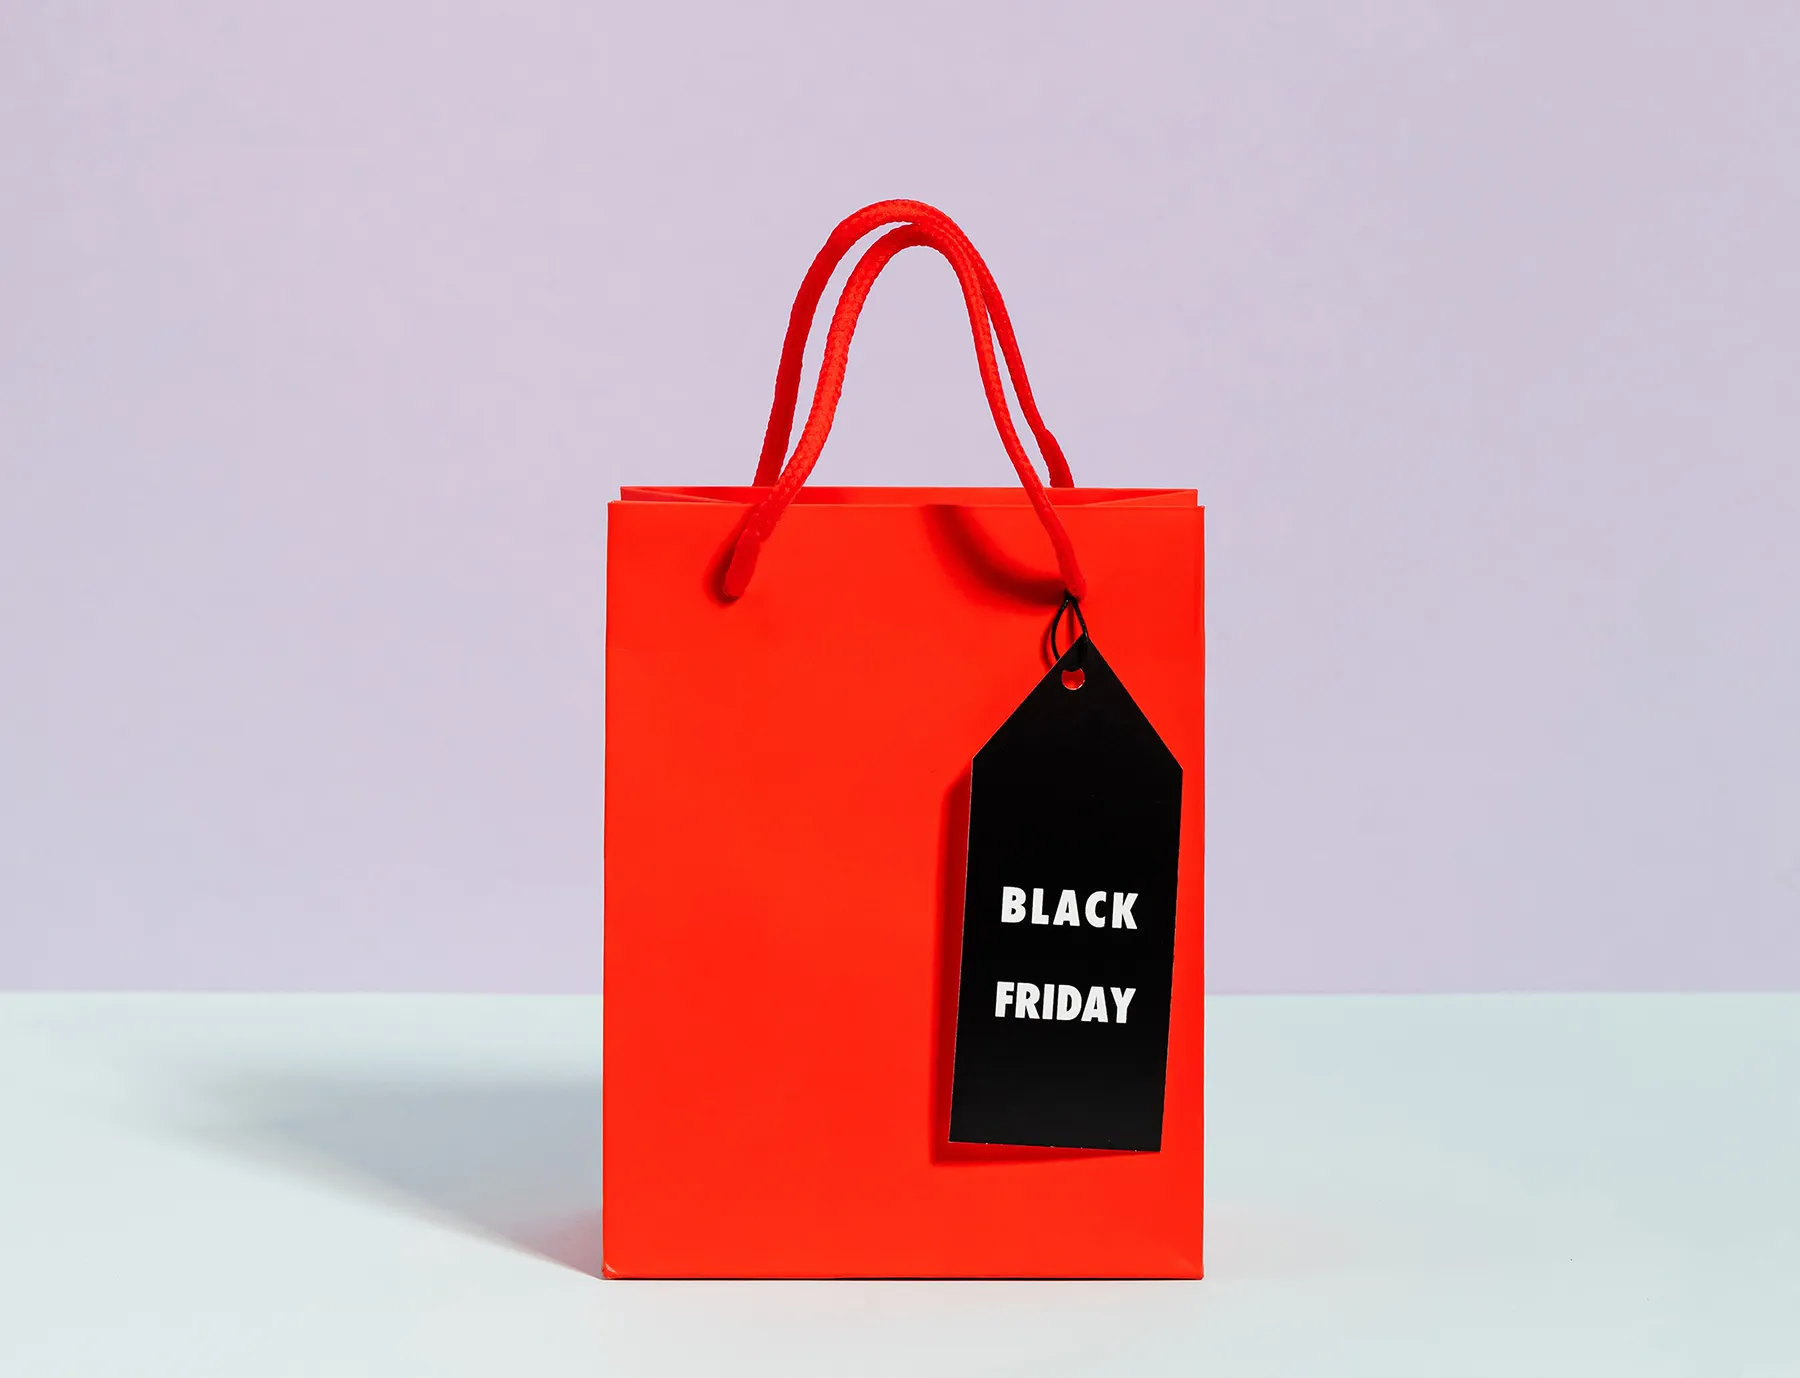 Black Friday 2021: Prepara tu tienda para una campaña espectacular